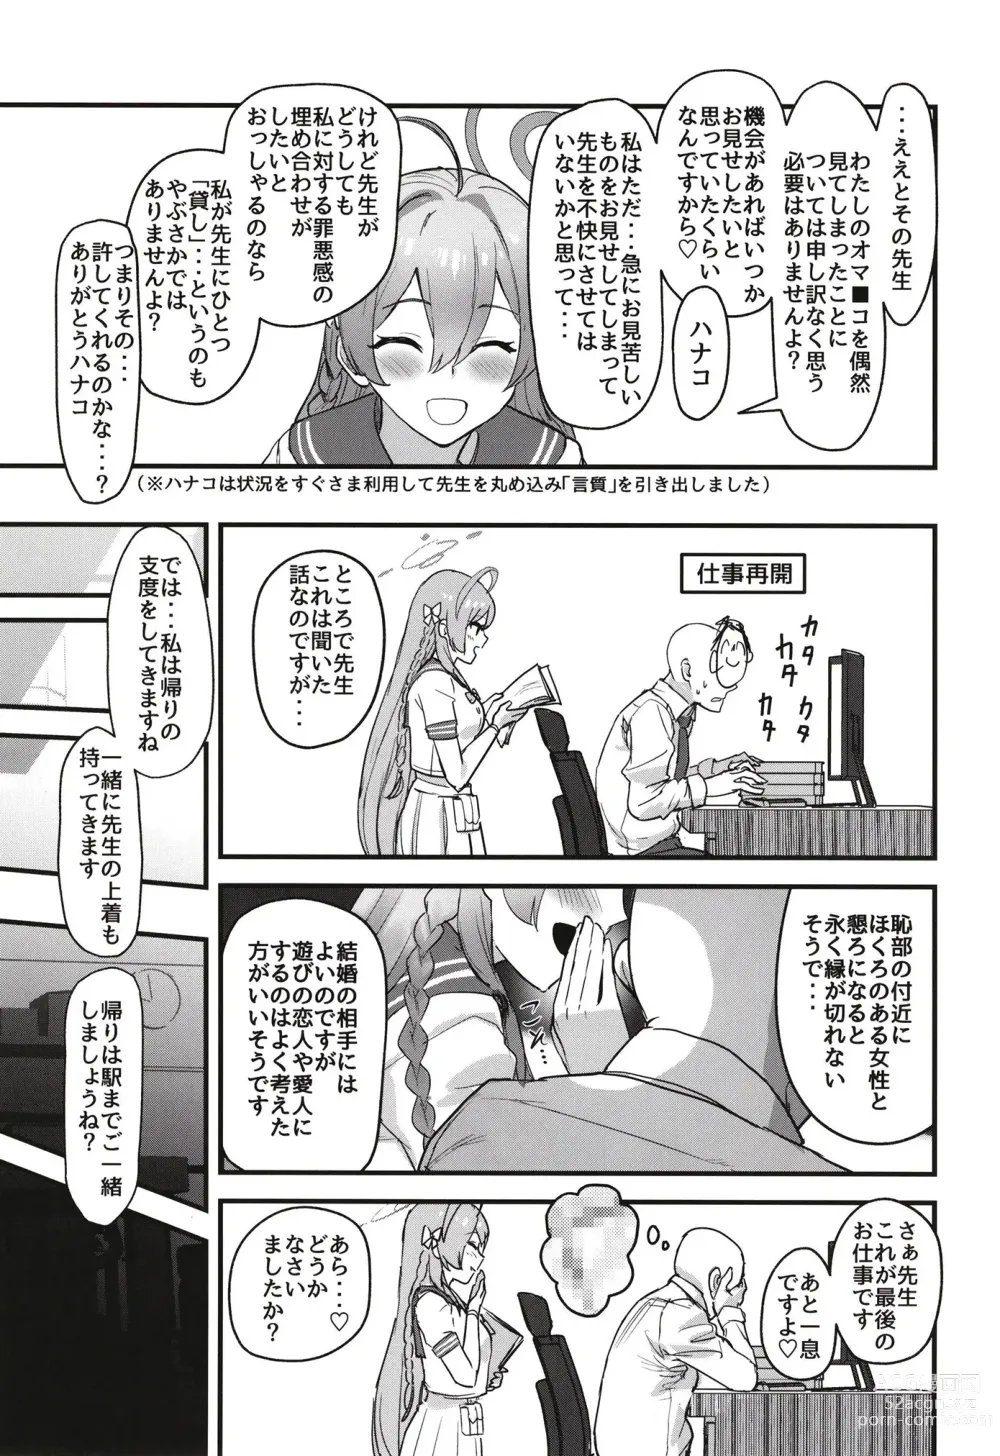 Page 9 of doujinshi Aiyoku wa Muyoku ni Nitari